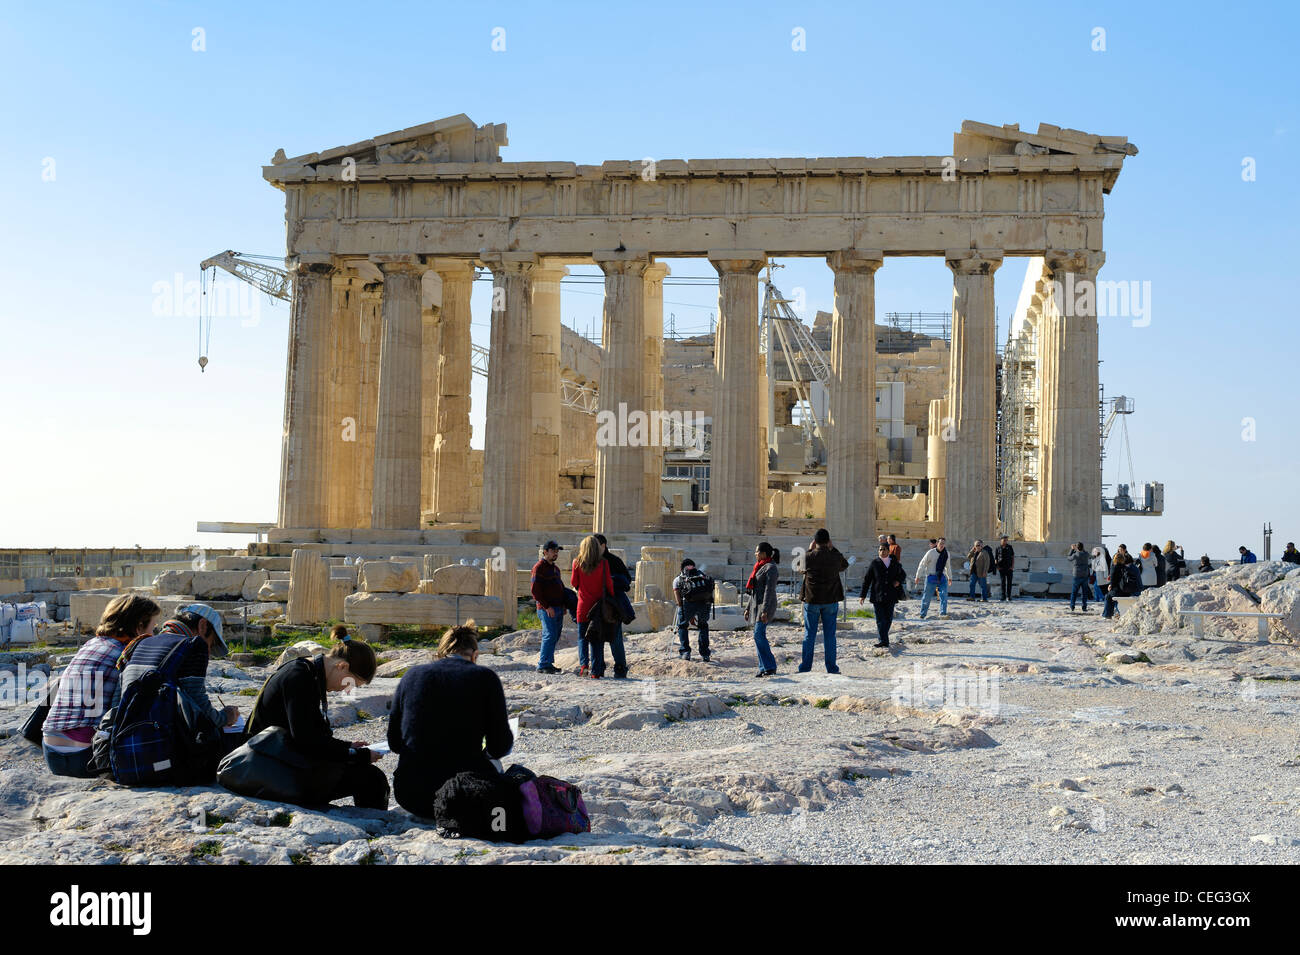 Parthenon Temple, the Acropolis, Athens, Greece, Europe Stock Photo